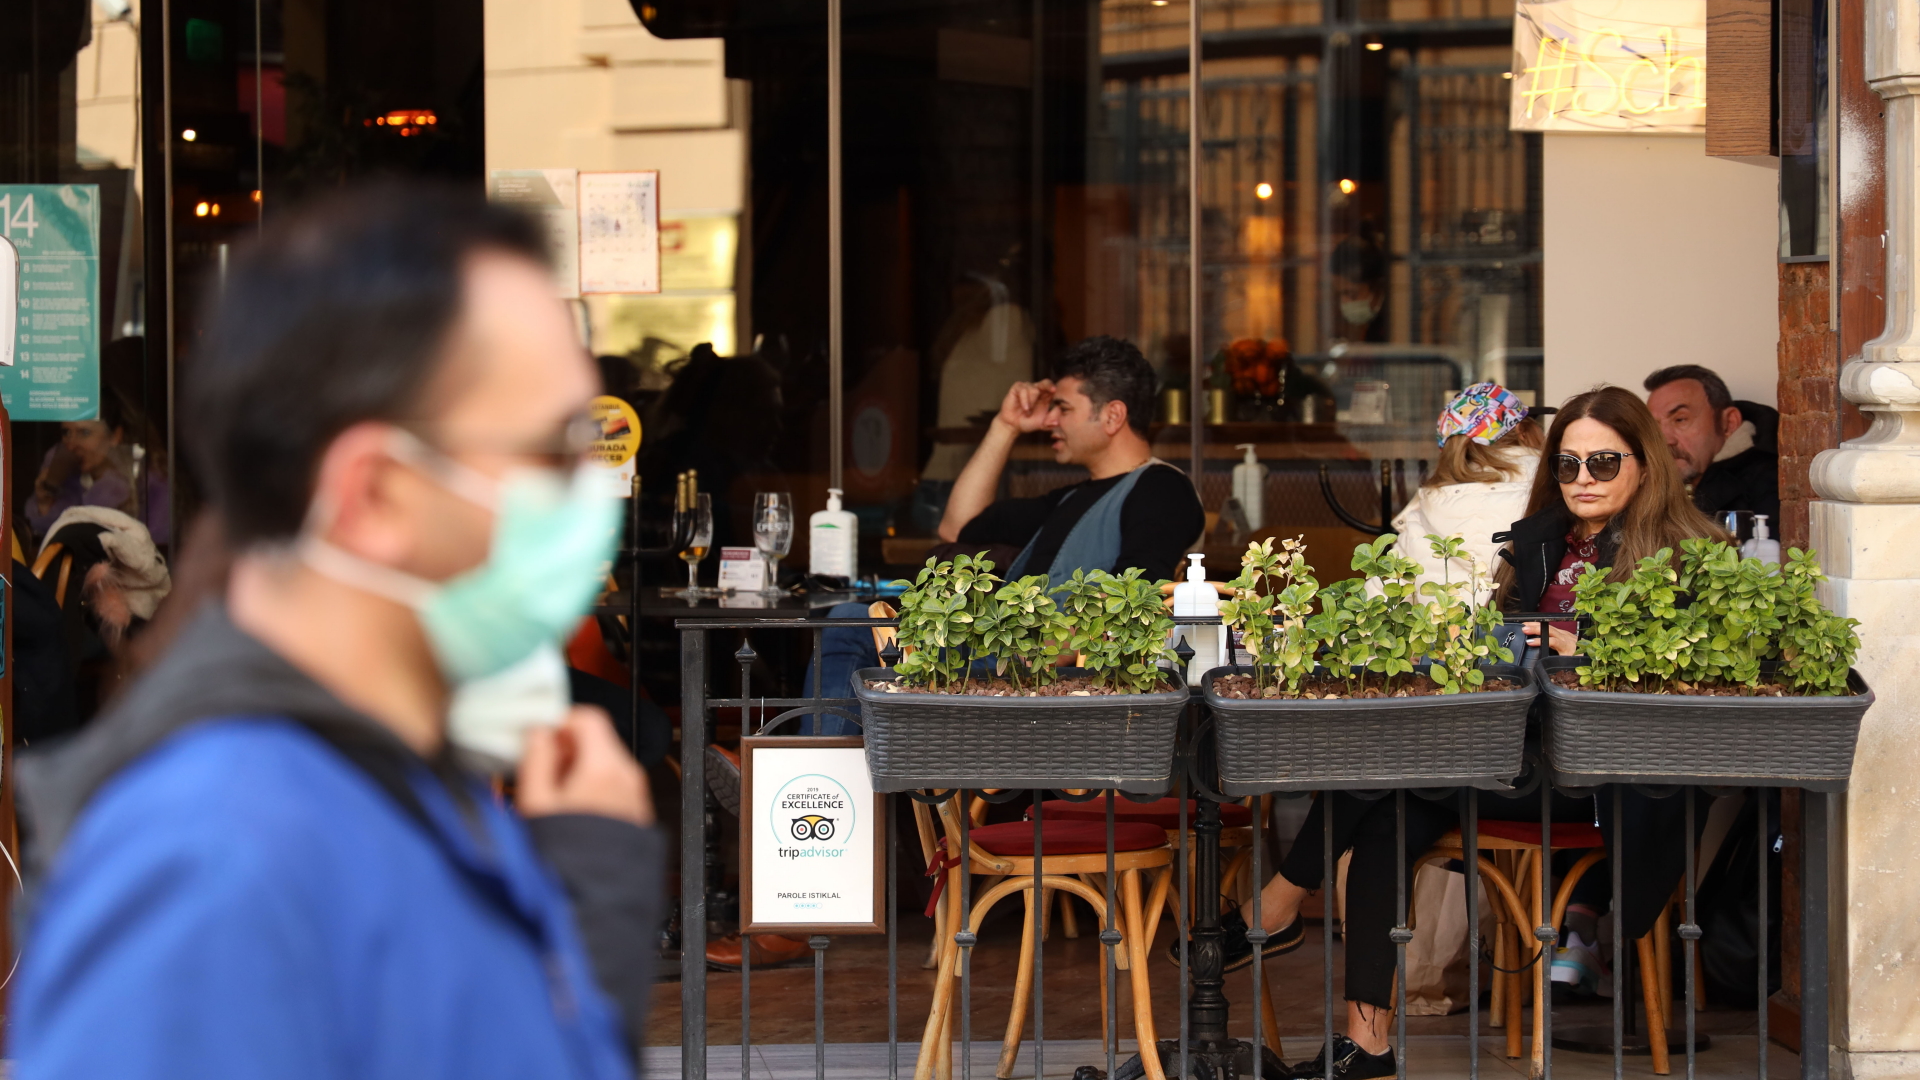  Türkei, Istanbul: Ein Mann mit Mund-Nasen-Schutz läuft an einem Café vorbei, in dem einige Menschen sitzen.  | dpa